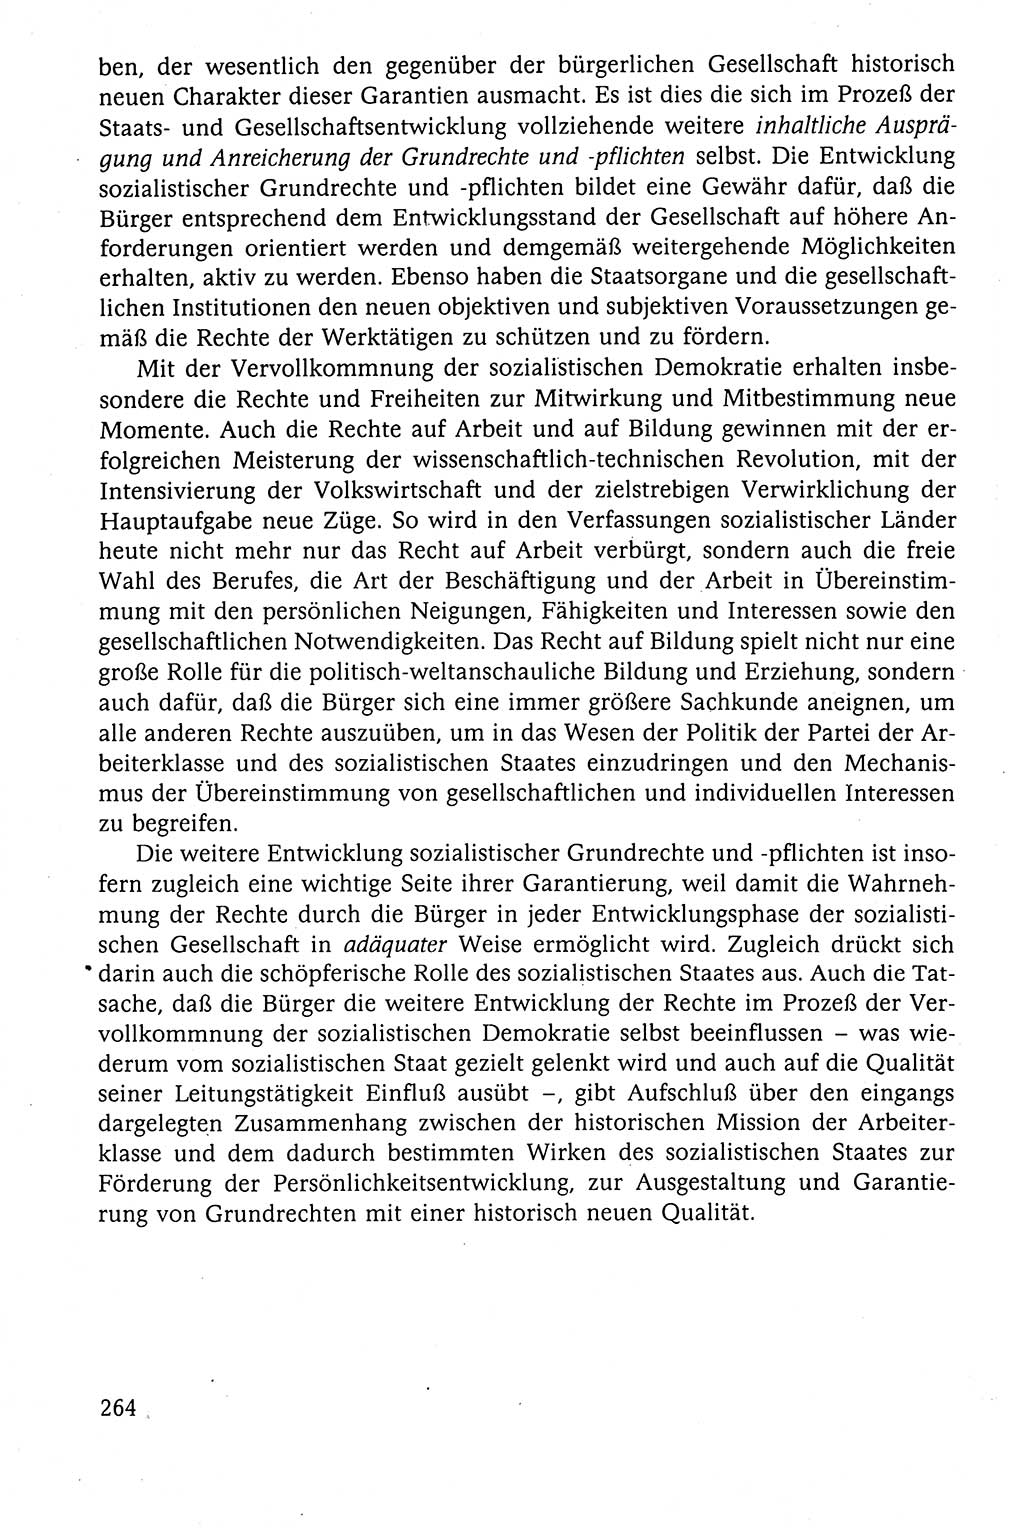 Der Staat im politischen System der DDR (Deutsche Demokratische Republik) 1986, Seite 264 (St. pol. Sys. DDR 1986, S. 264)